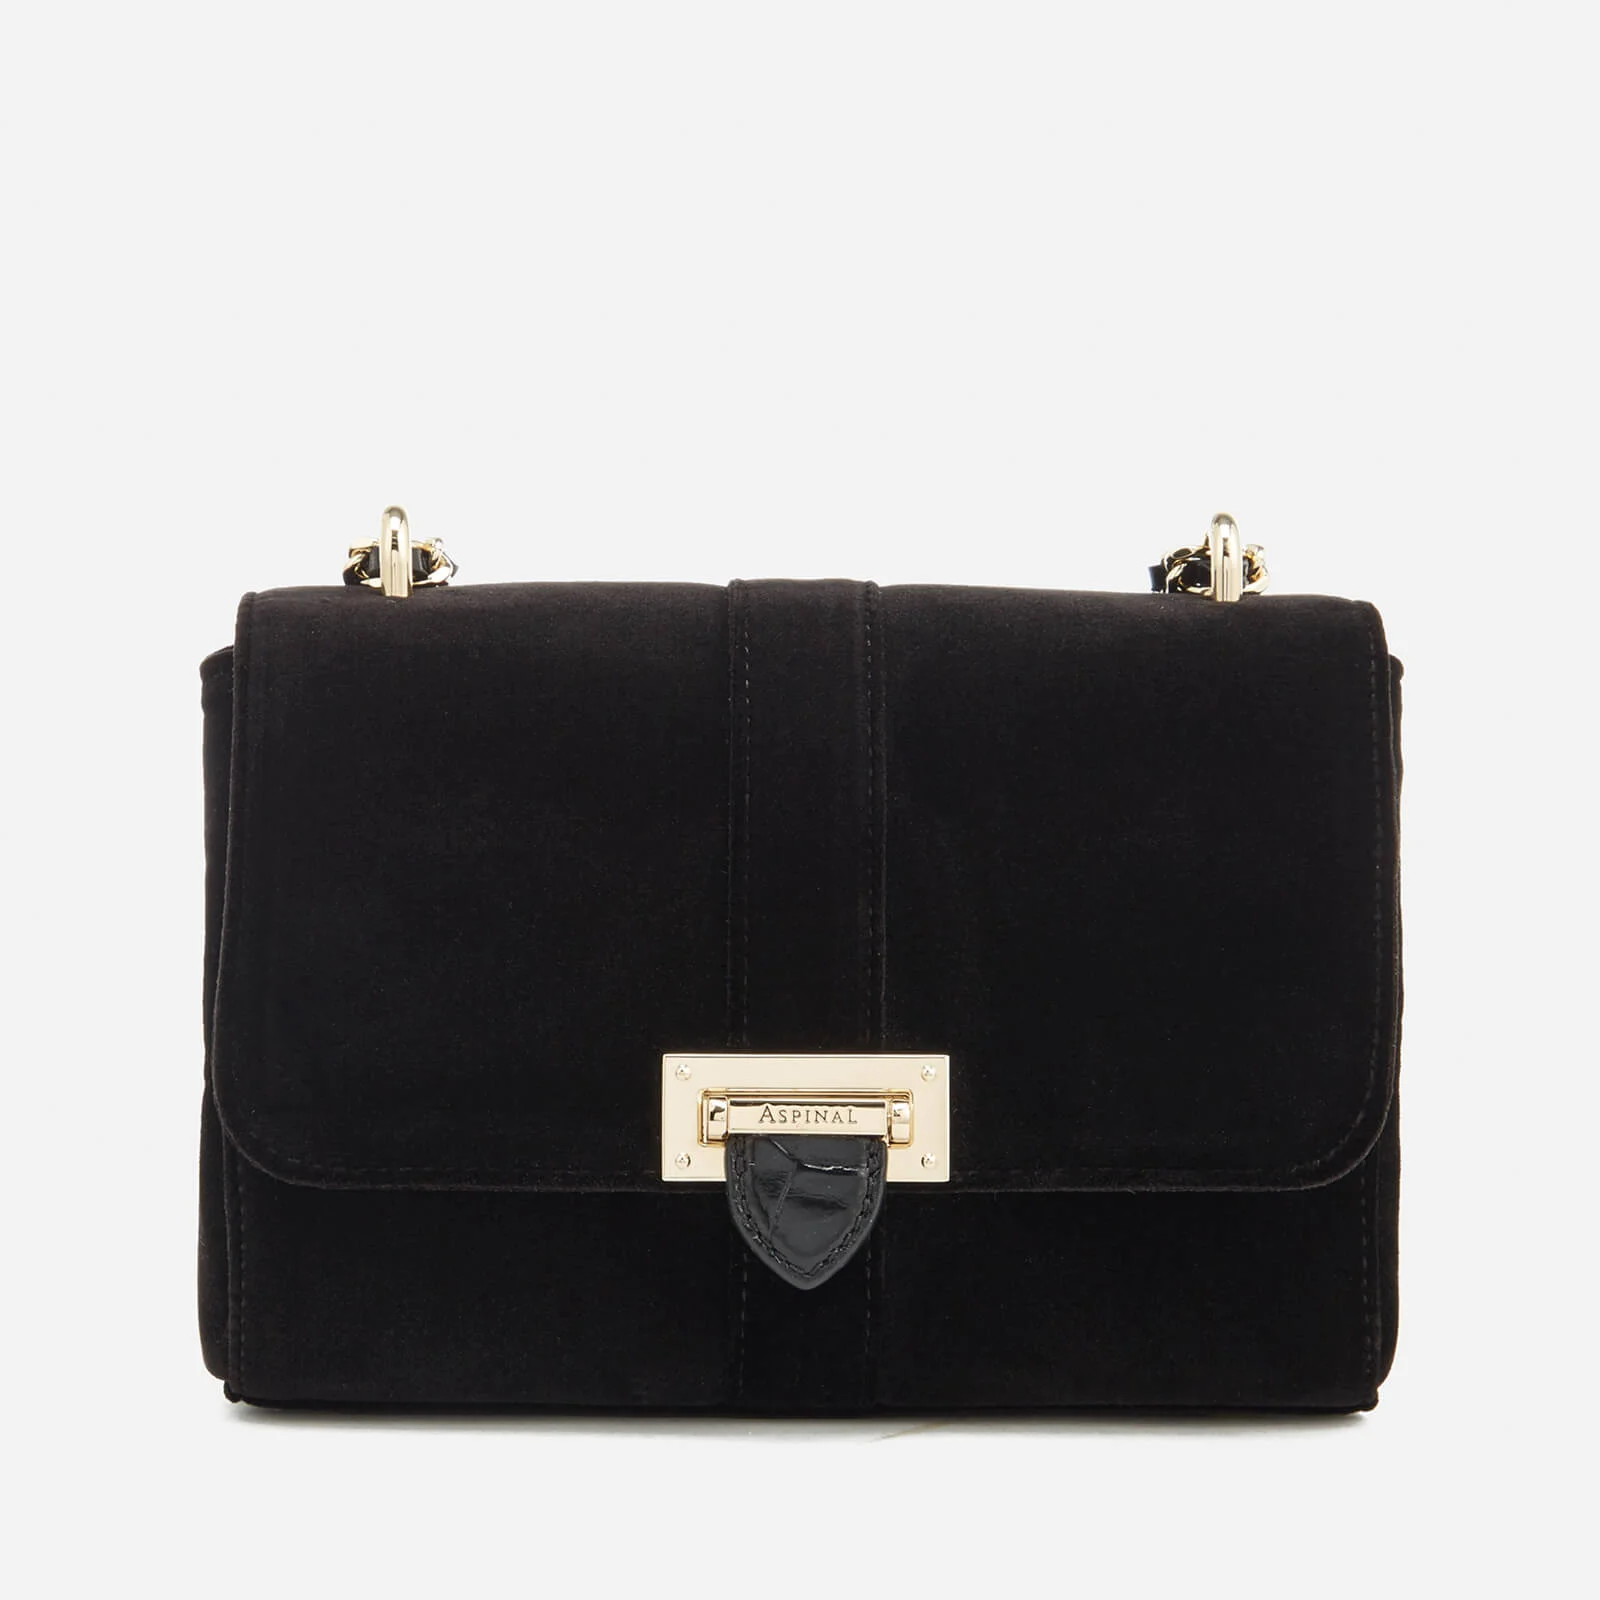 Aspinal of London Women's Velvet Lottie Bag - Black Image 1